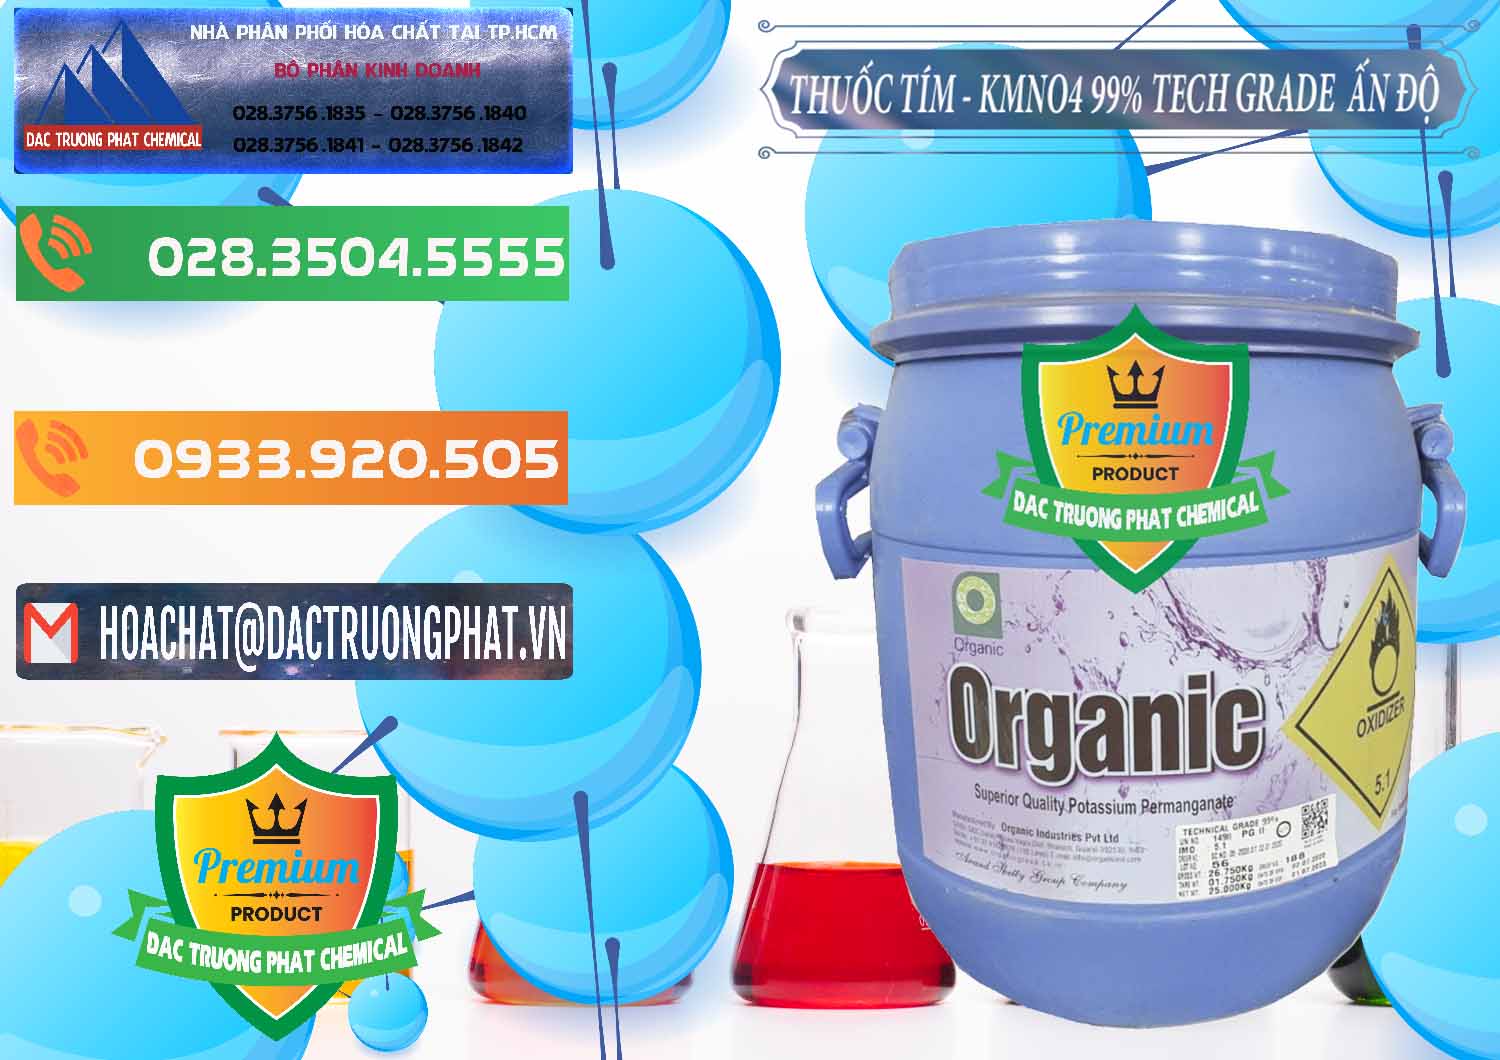 Cty bán _ cung ứng Thuốc Tím - KMNO4 99% Organic Group Ấn Độ India - 0250 - Cty bán _ cung cấp hóa chất tại TP.HCM - hoachatxulynuoc.com.vn